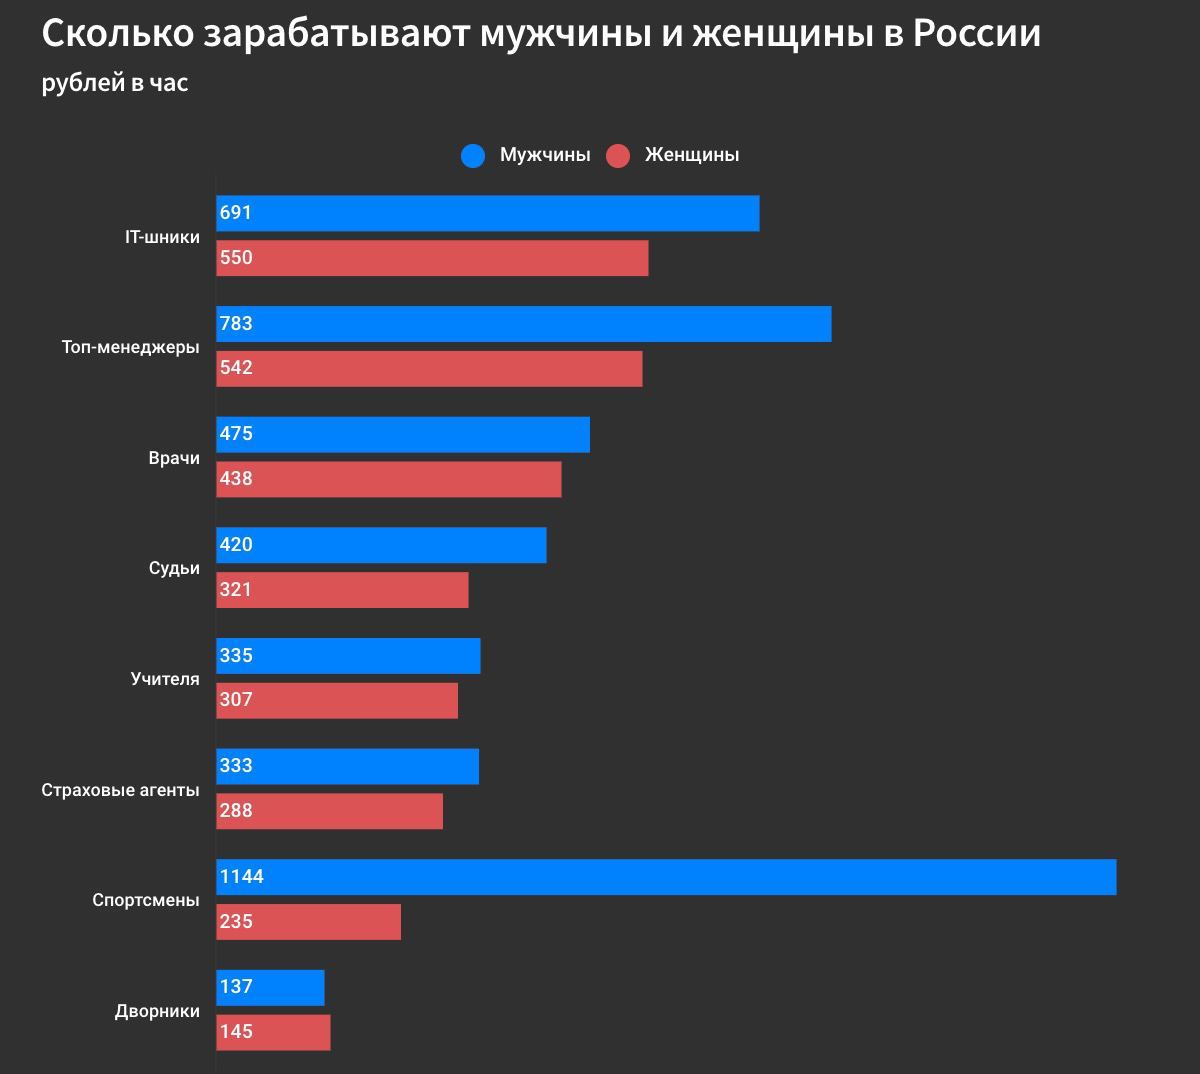 Сколько зарабатывают российские мужчины и женщины в разных профессиях